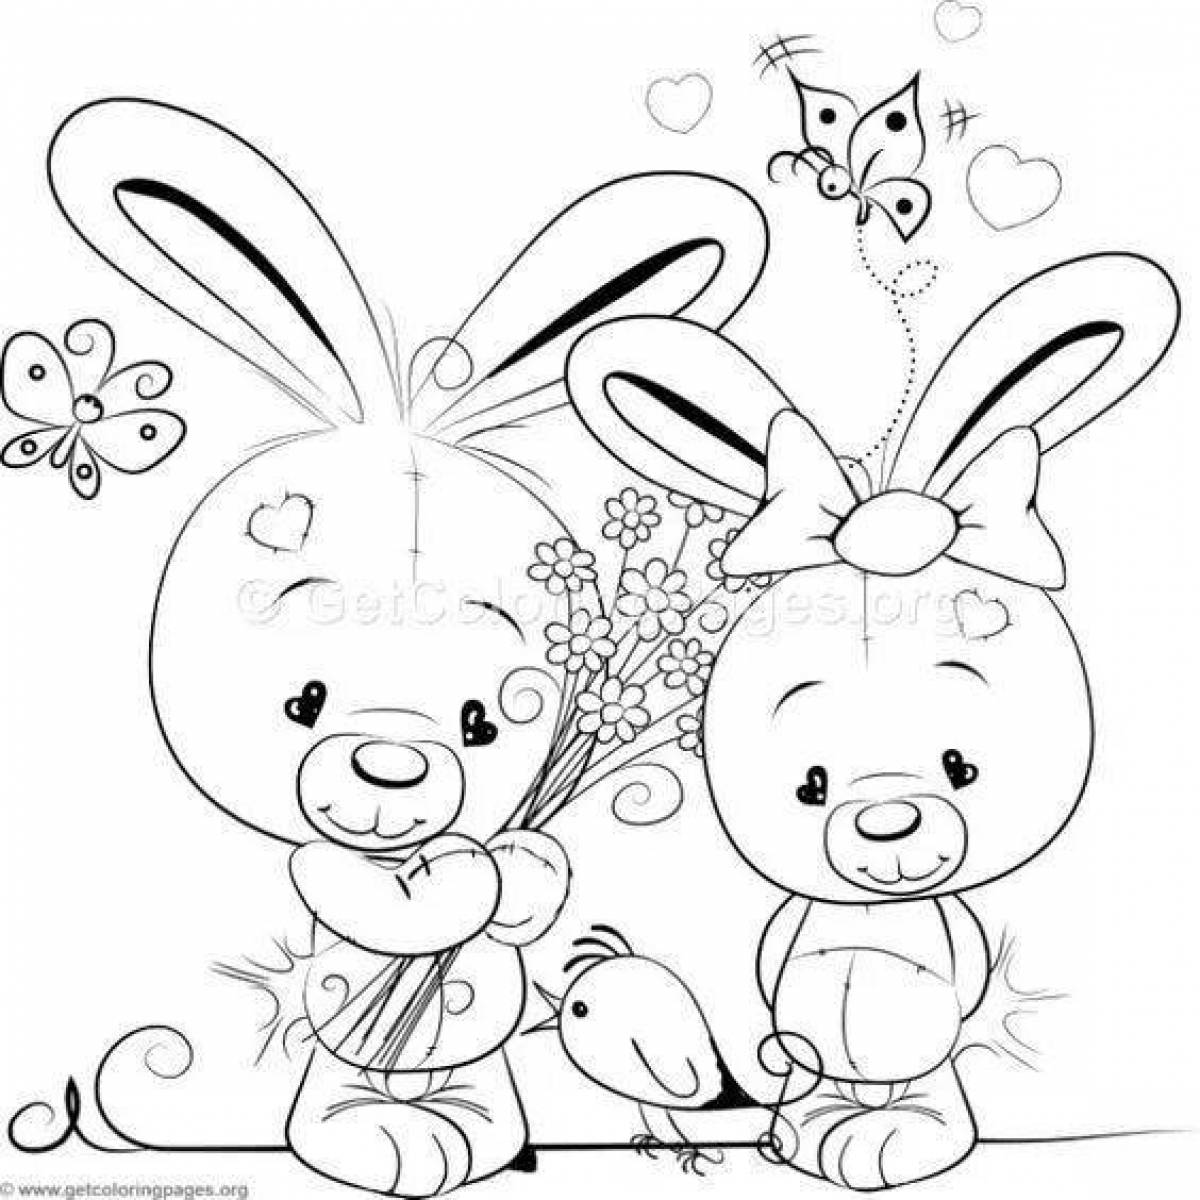 Coloring book sunny bunnies все открыто. Раскраска зайчик. Раскраски для девочек зайчики. Солнечный зайчик раскраска для детей. Зайка раскраска для малышей.